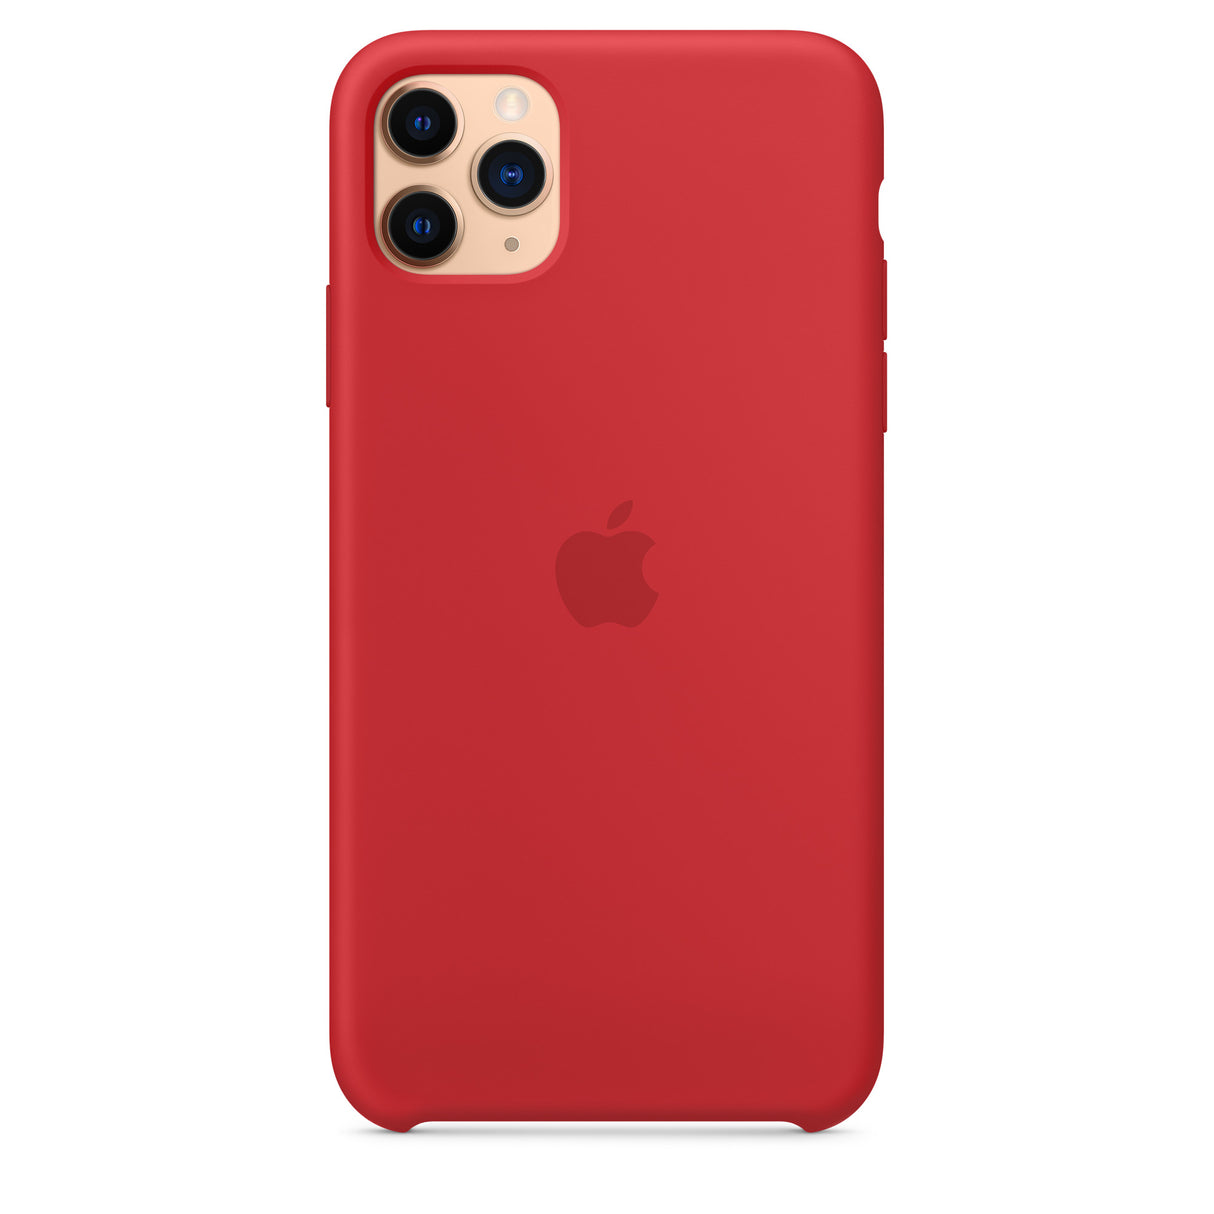 غطاء سيليكون لهاتف iPhone 11 Pro Max - (PRODUCT)RED OB 